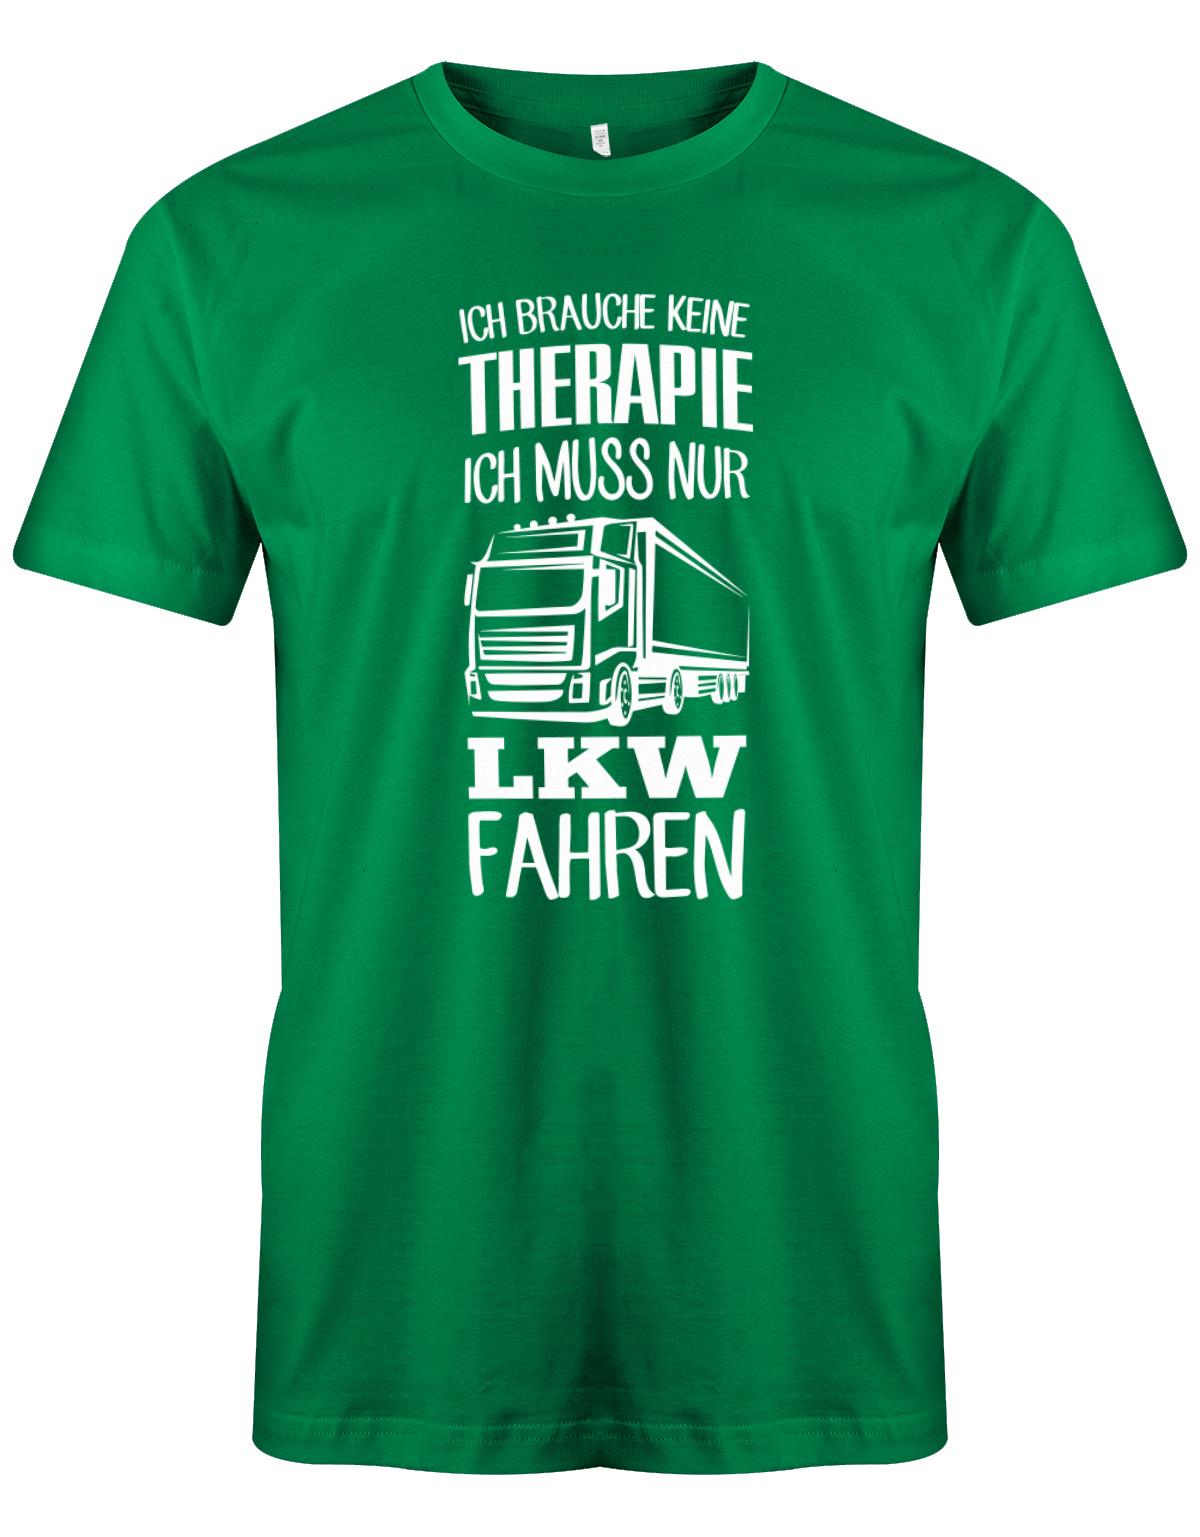 Lkw-Fahrer Shirt - Ich brauche keine Therapie ich muss nur Lkw fahren. Grün